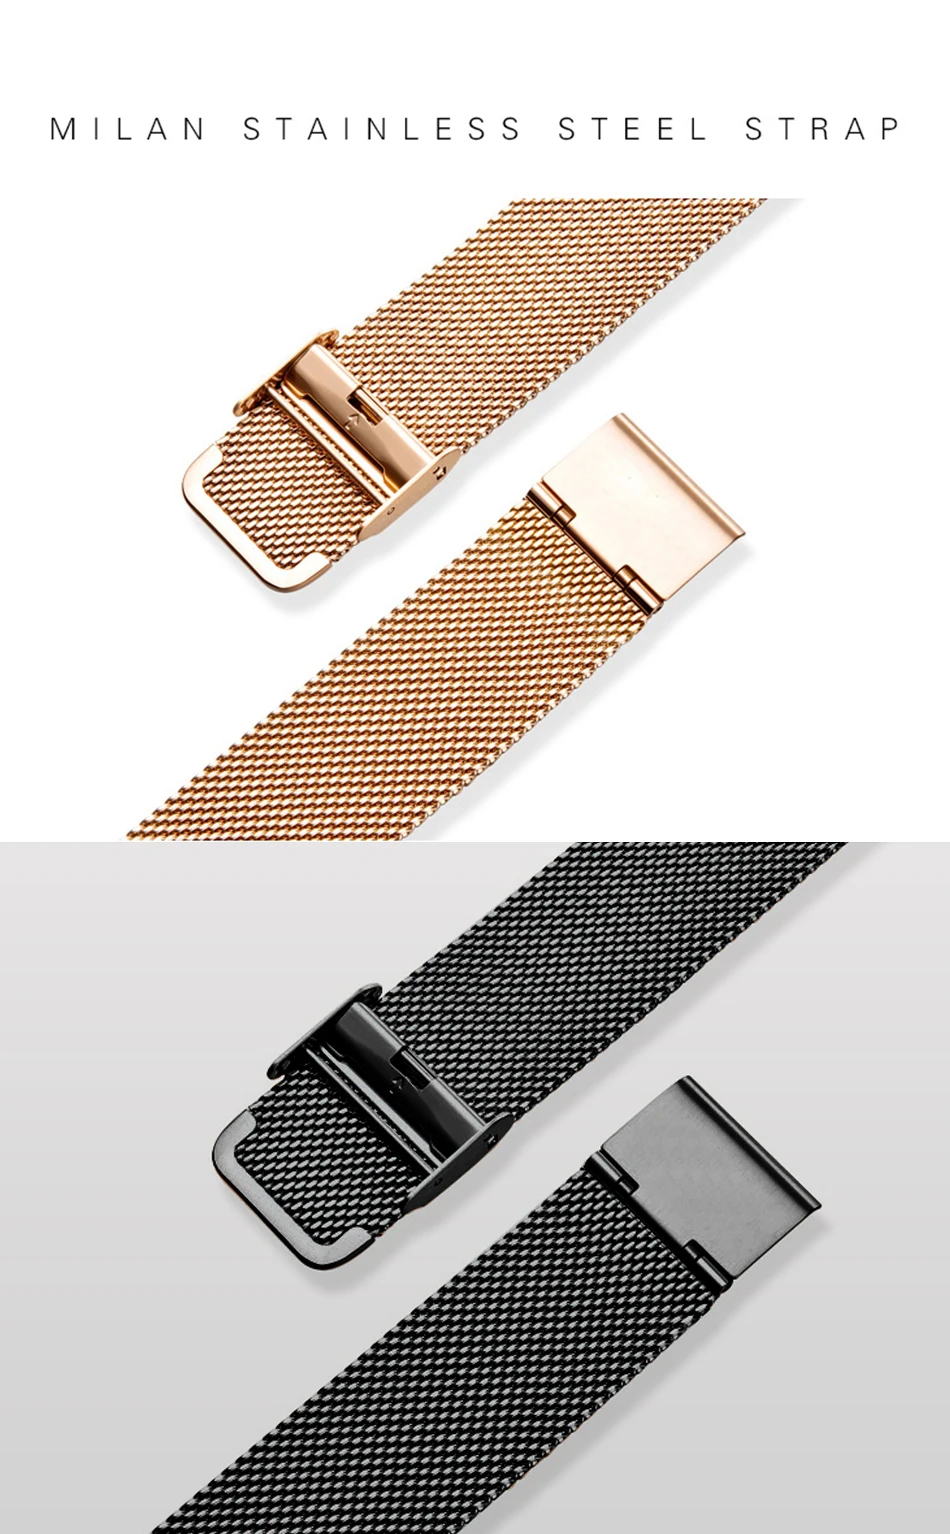 LIGE новые женские часы Топ люксовый бренд леди мода повседневное простой стальной сетчатый ремешок наручные часы подарок для девочек Relogio Feminino